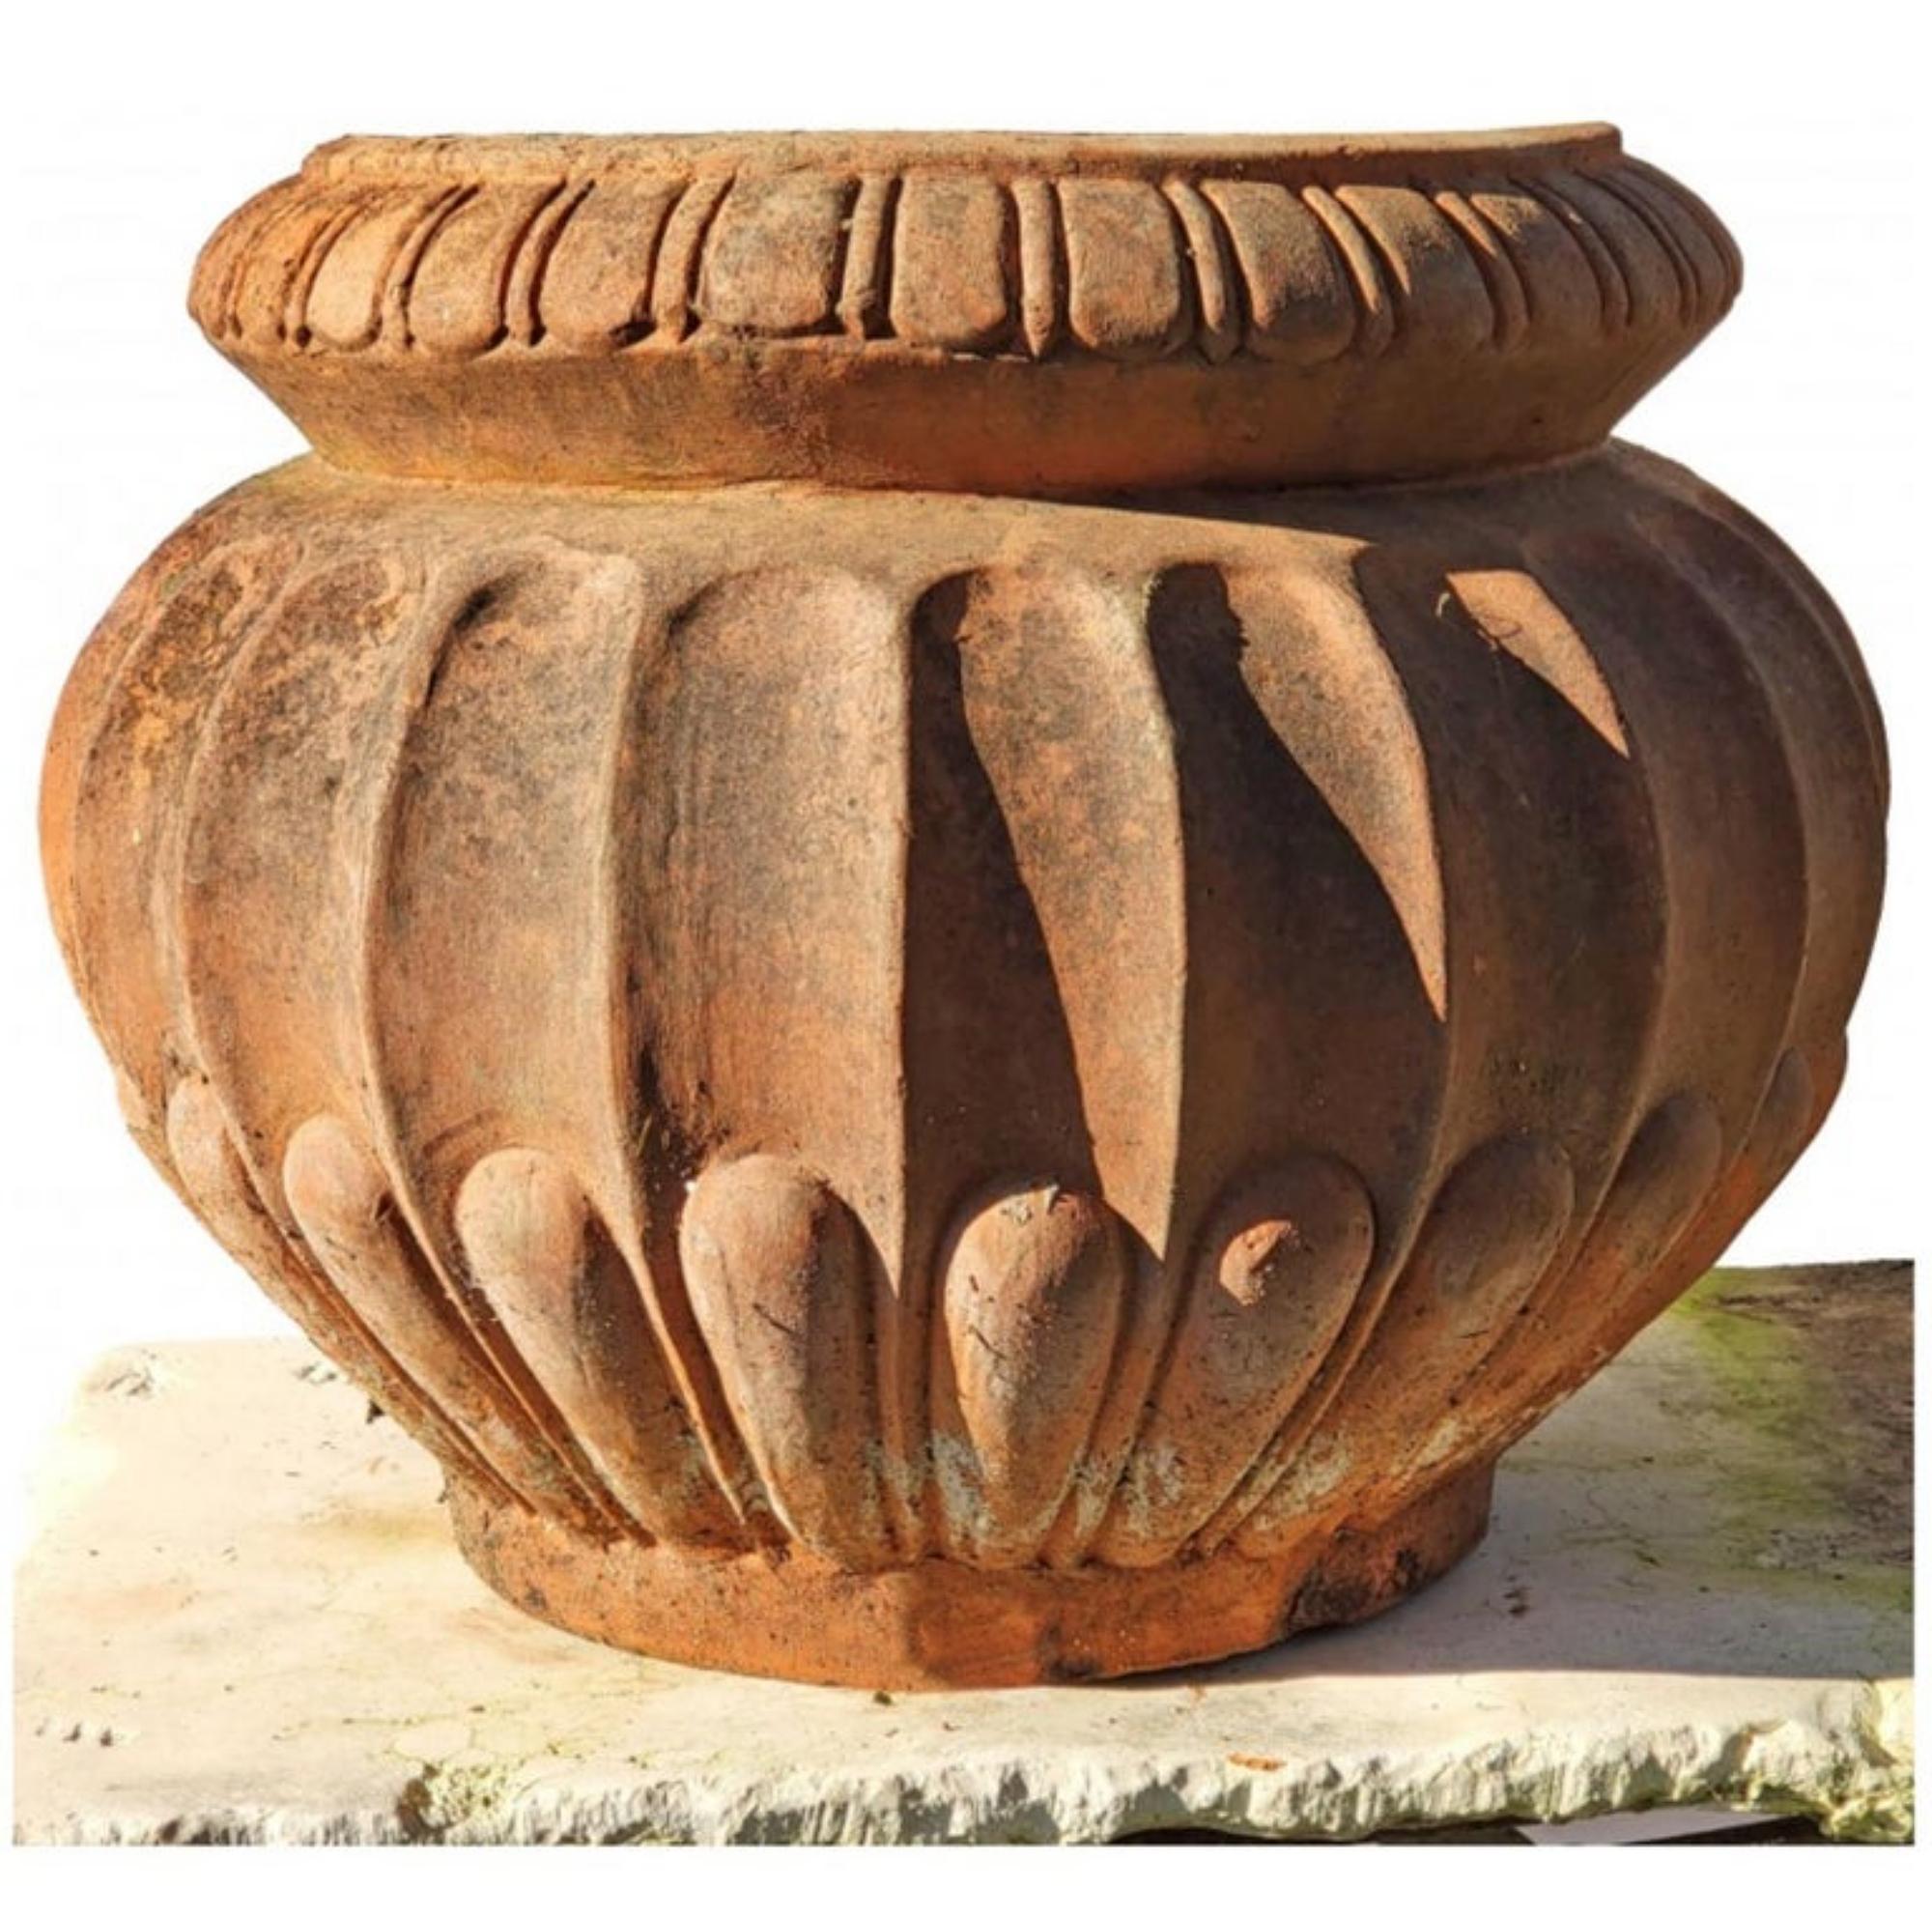 Ancien cache-pot original en terre cuite lucchese - Toscane 19ème siècle

Ancien cache-pot original en terre cuite de Lucca - Toscane
Vase avec poignées.

Hauteur 30 cm
Poids 15 kg
Diamètre de la base 18 cm
Dimensions internes de la bouche 23